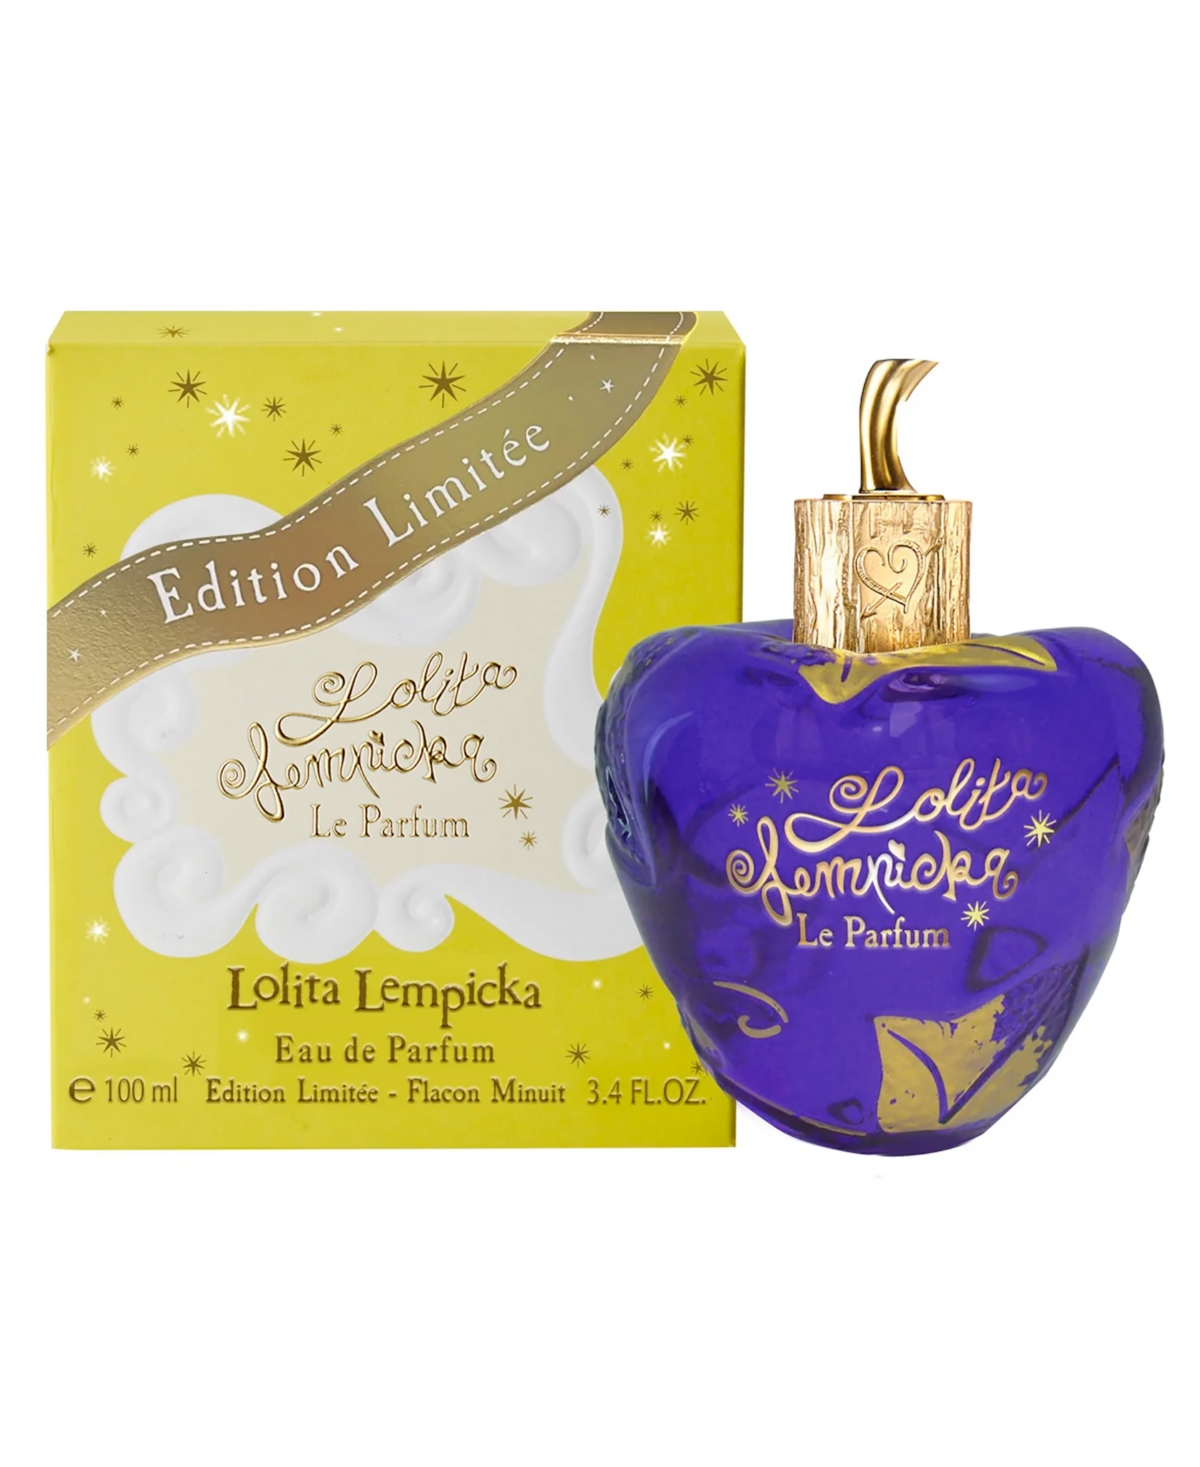 Le Parfum Midnight Limited-Edition Eau de Parfum, 3.4 oz.